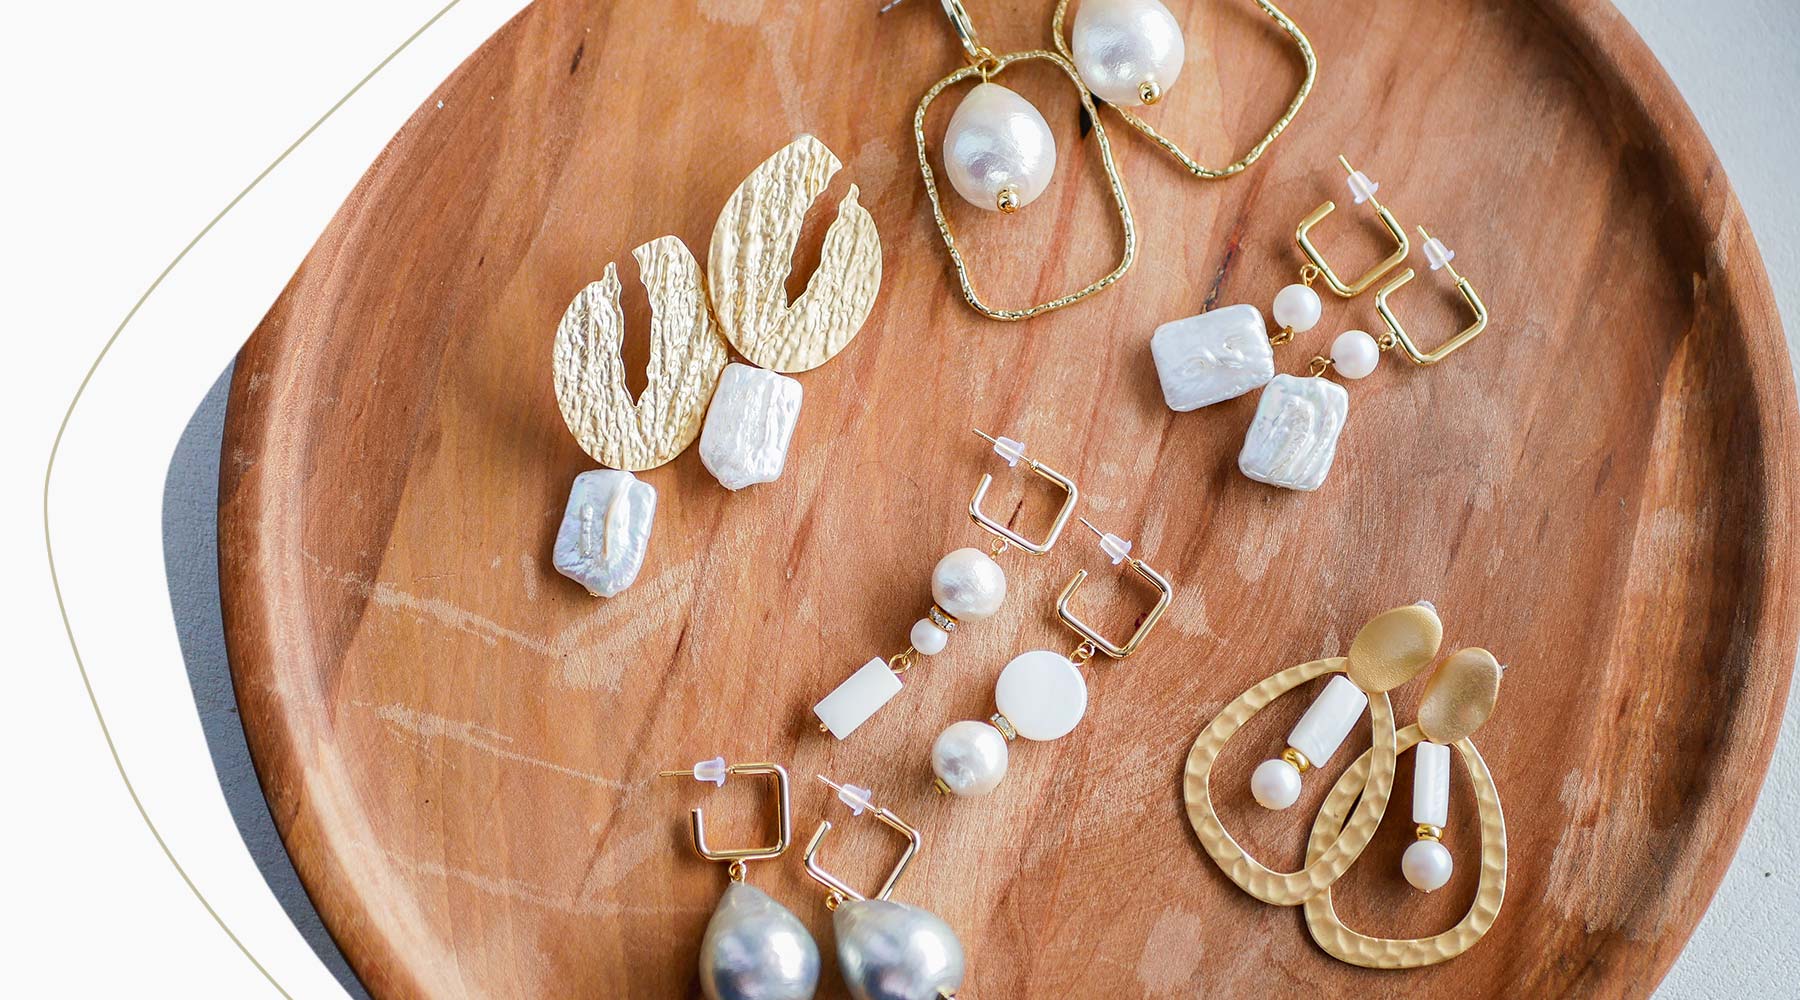 Perlenschmuck bei Goldschmiede Jaqueline. 
        Große Auswahl an Perlen Schmuck aus vielen verschiedenem Perlenarten. Egal ob Süsswasser Perlen oder Zuchtperlen - Sie finden garantiert etwas, das Ihr Outfit glänzen lässt.